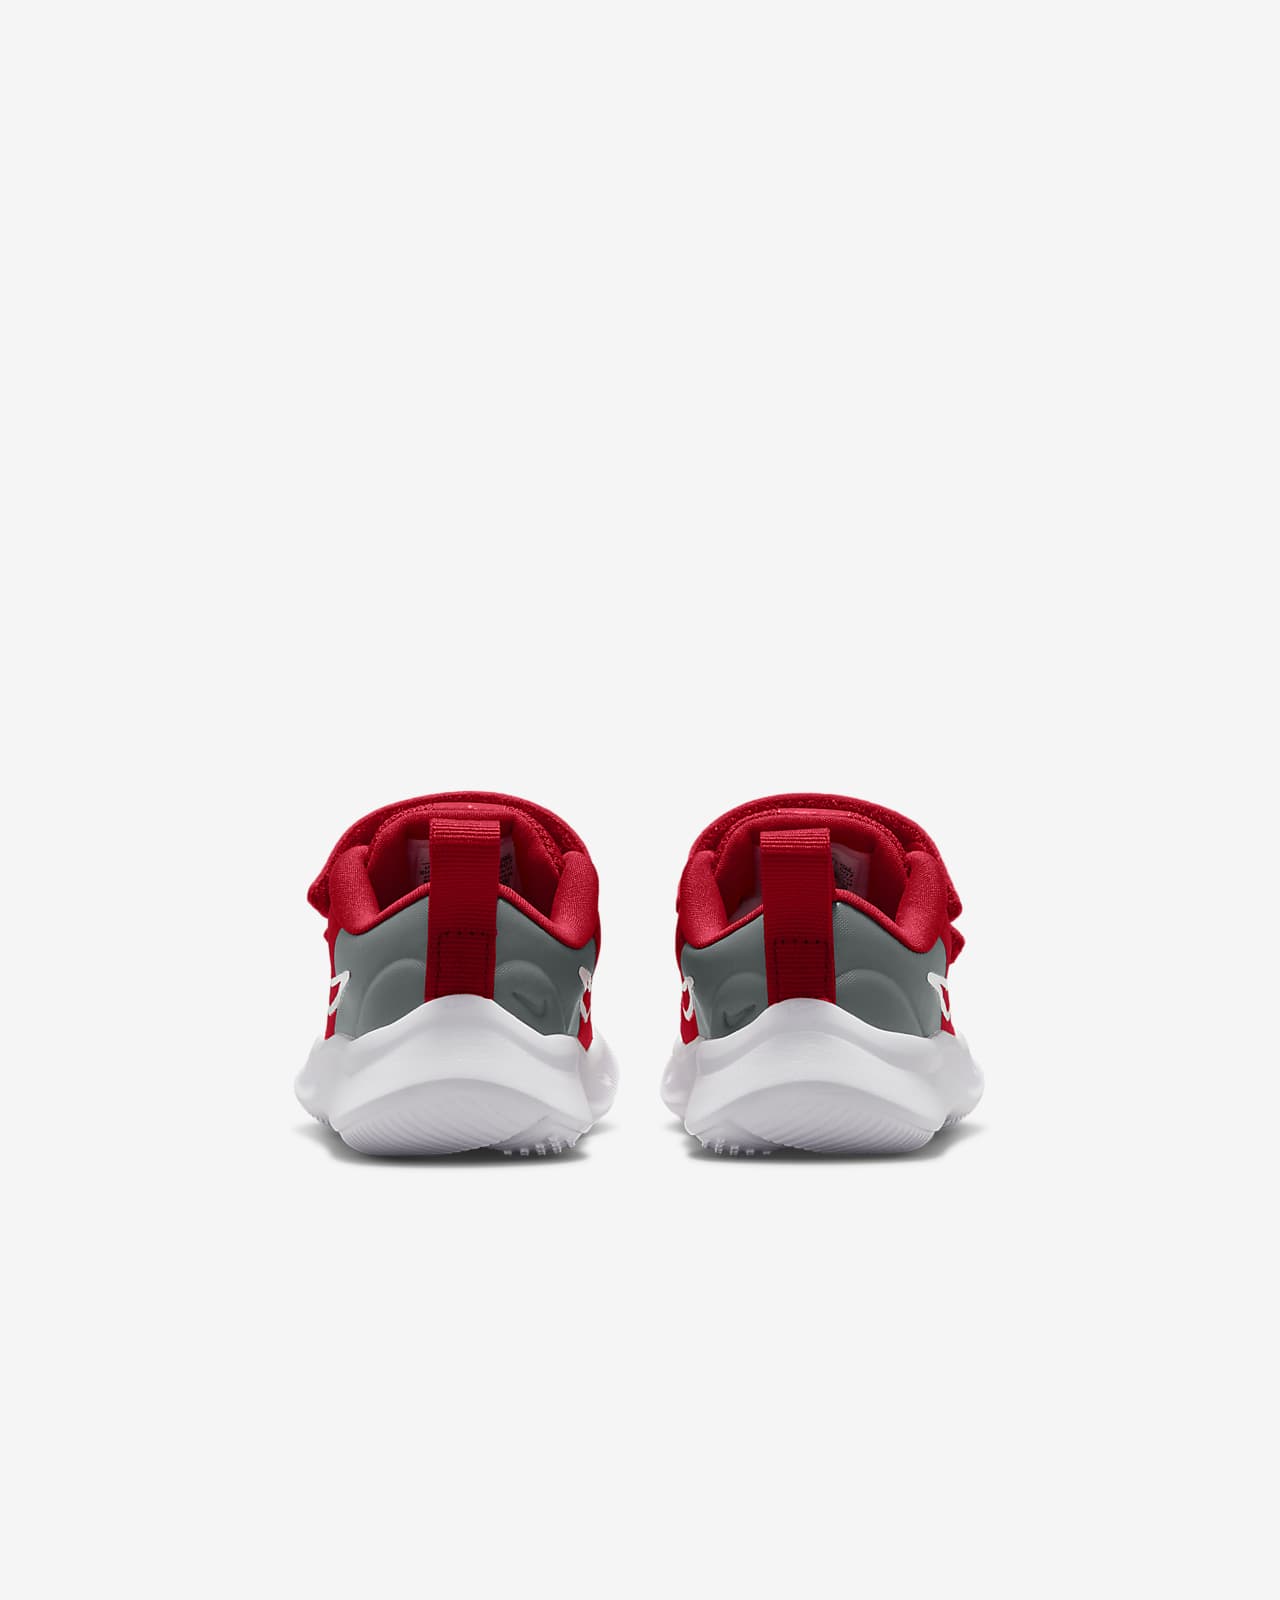 Zapatillas para niña Nike Star Runner 3 online en MEGACALZADO